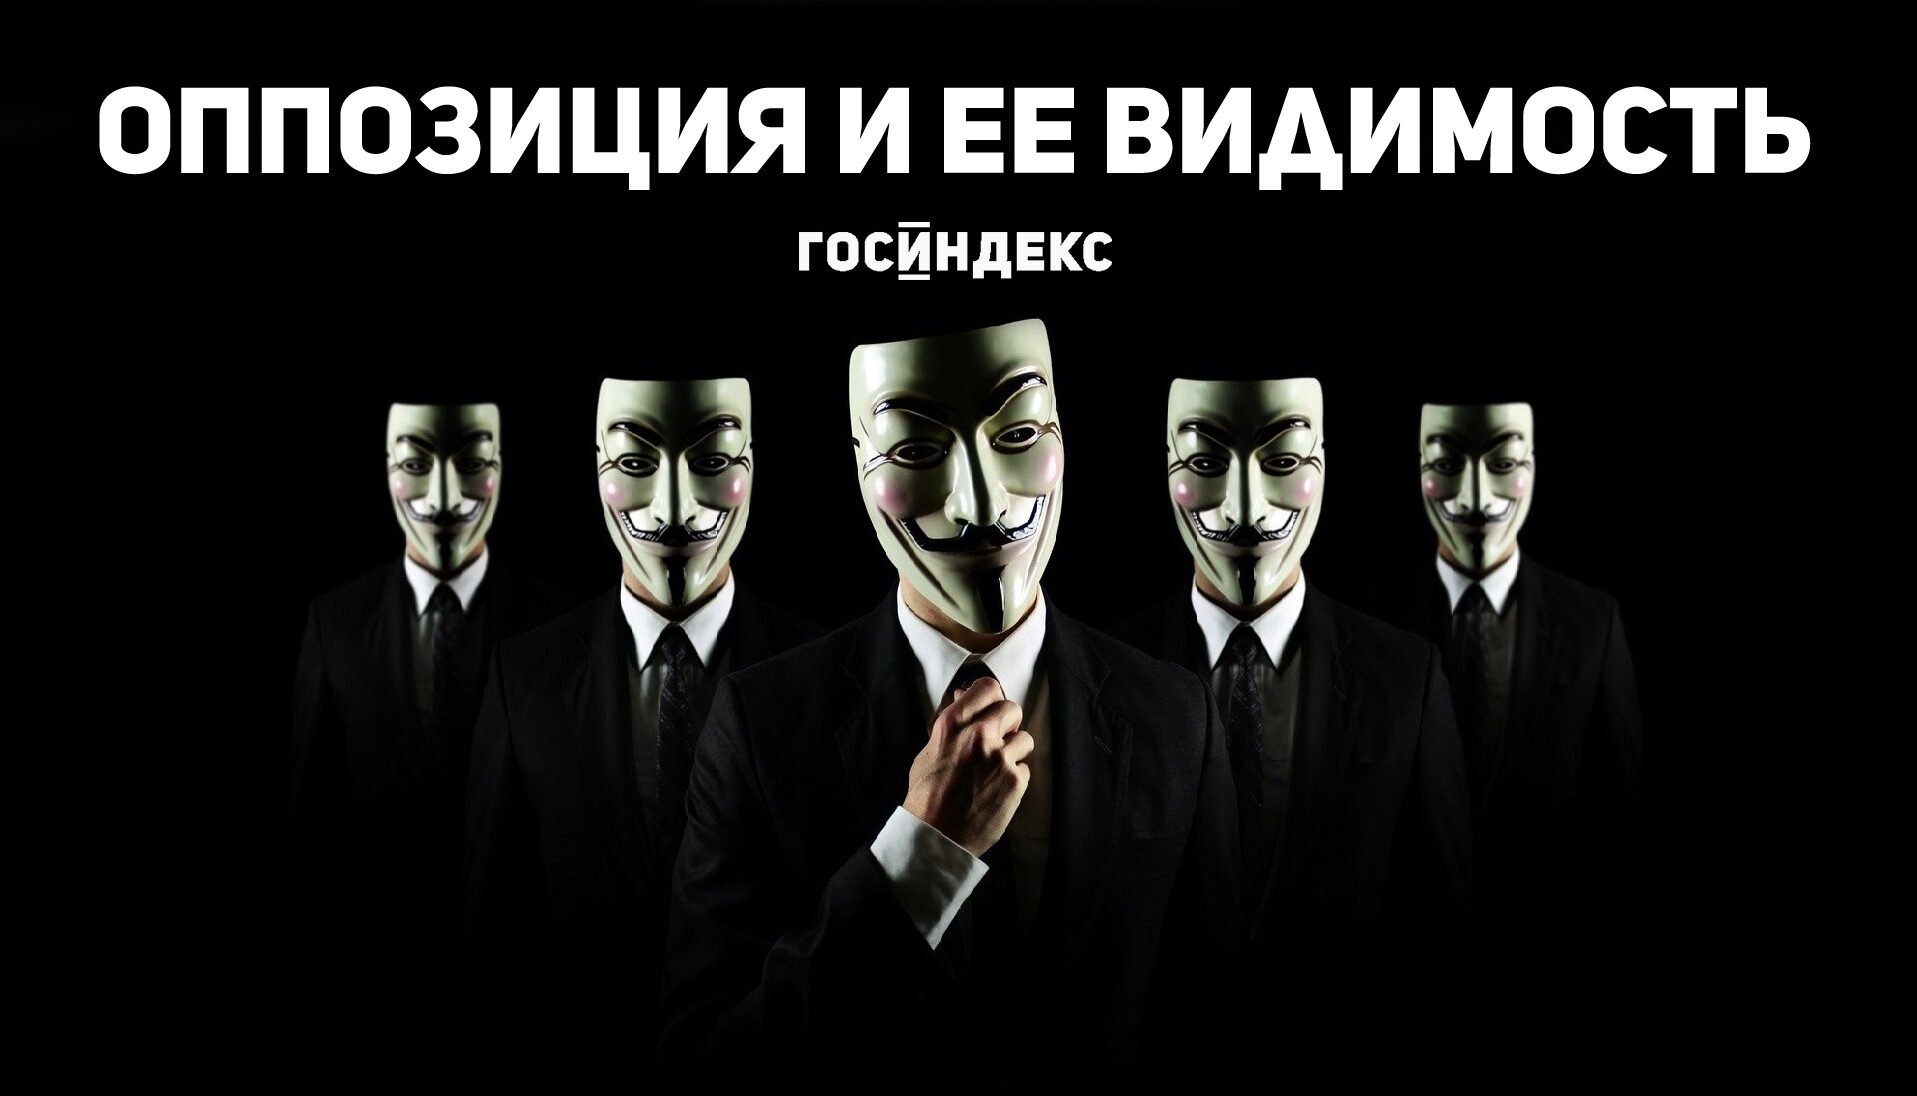 hackers-robaron-24-millones-a-atm-kopiya-8702322